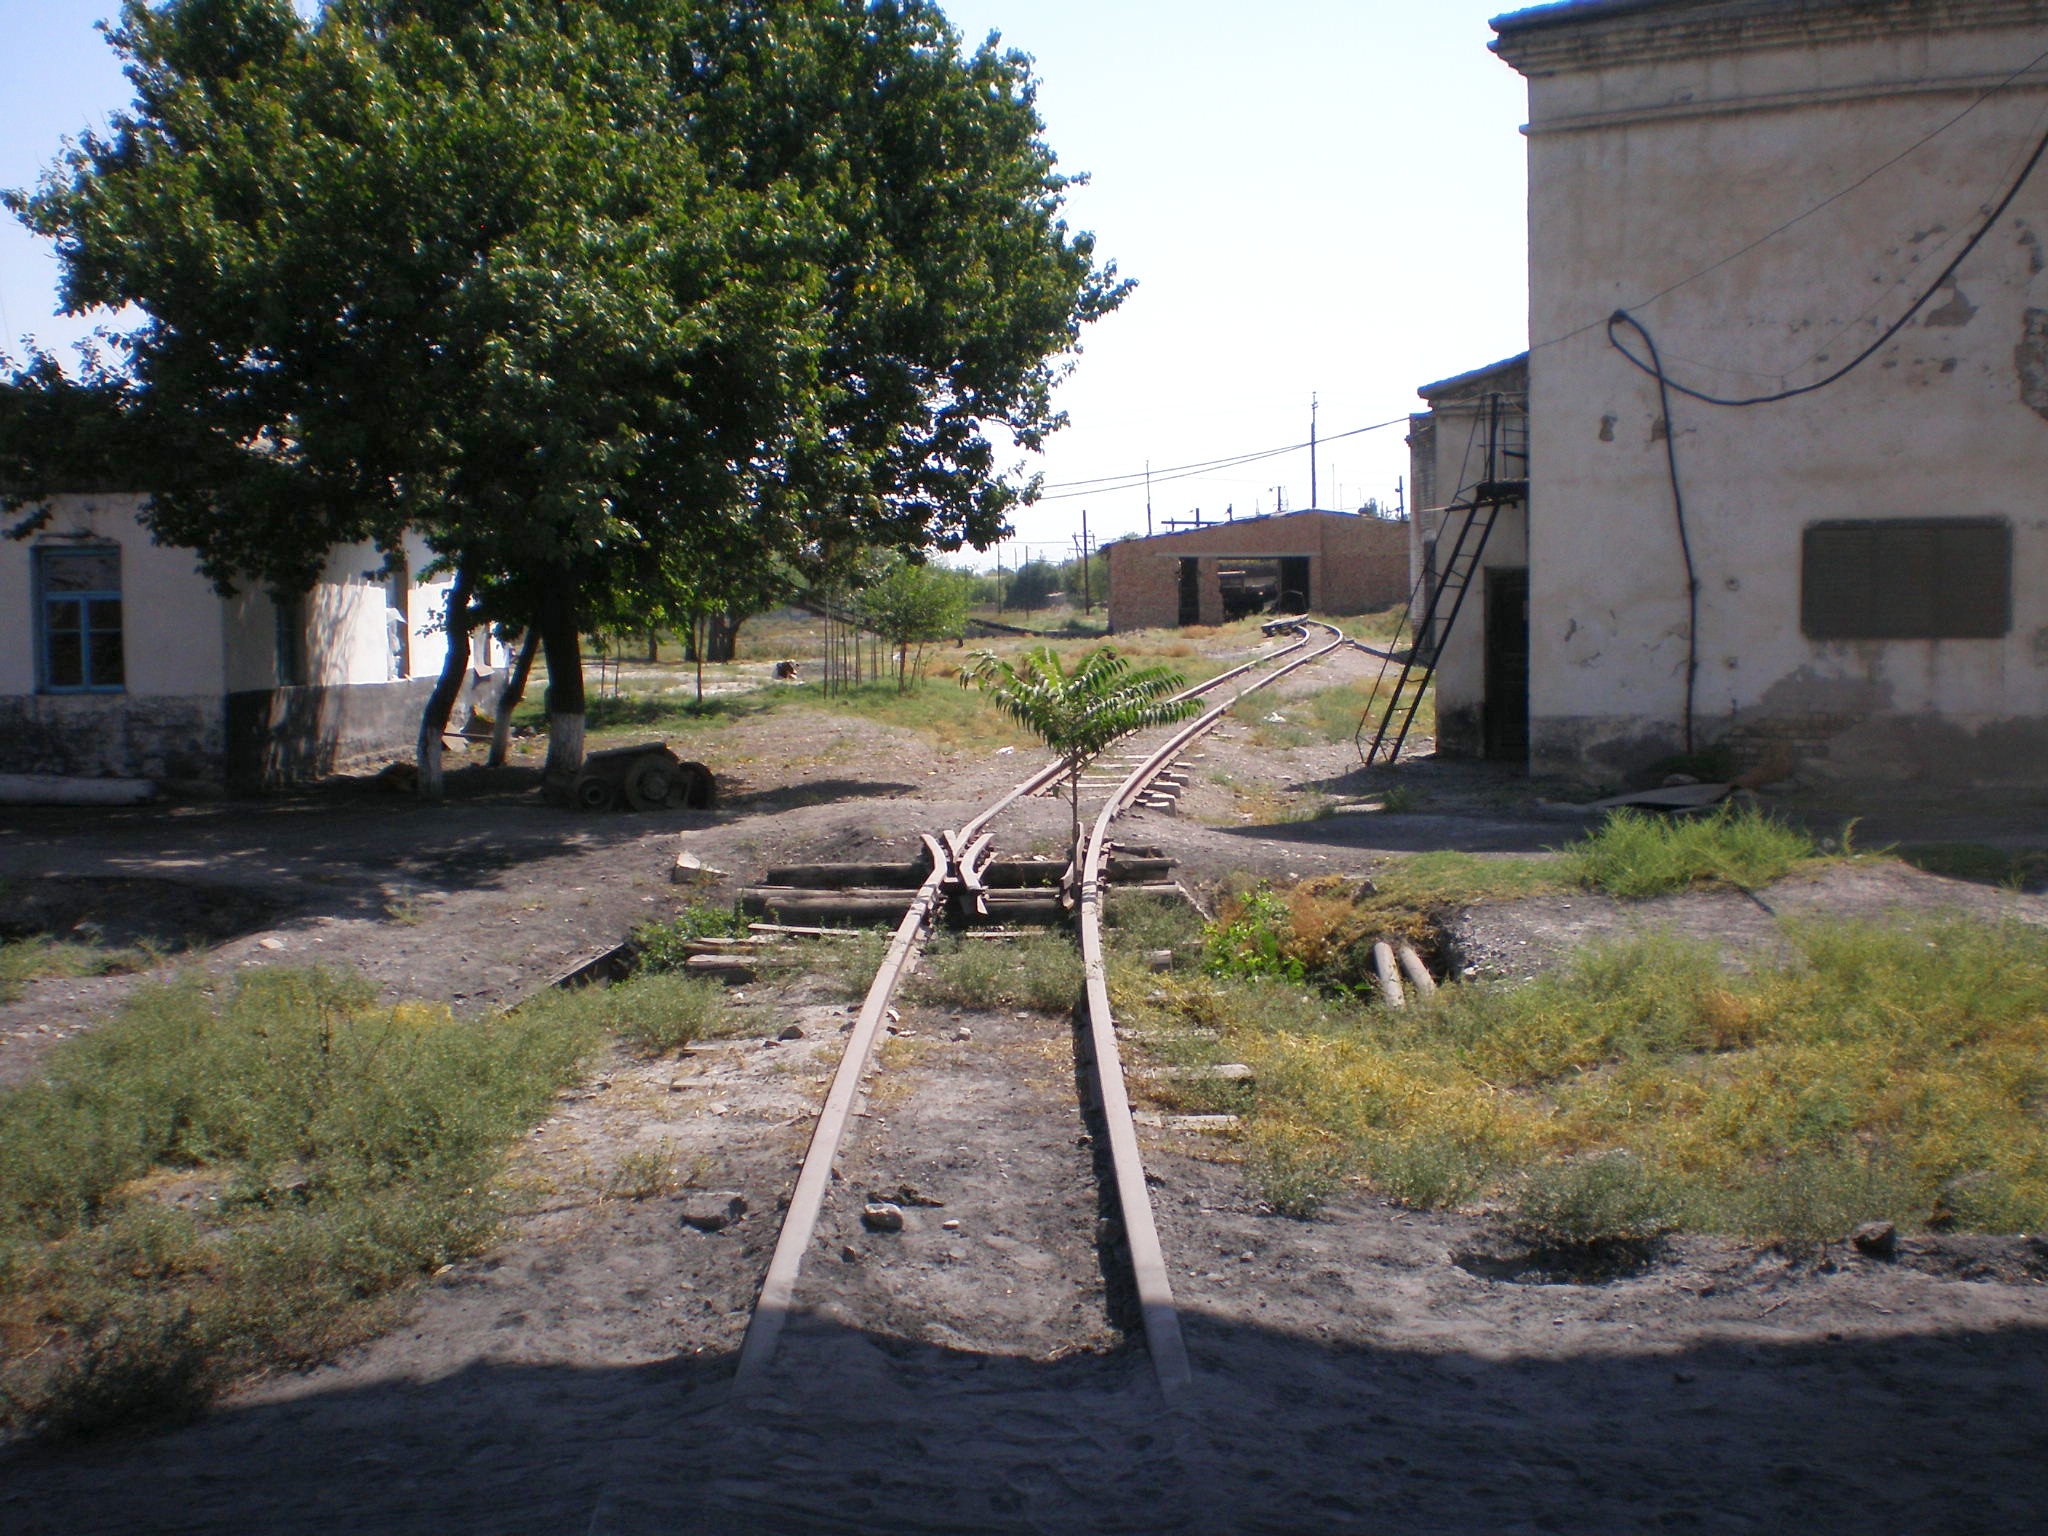 Сулюктинская узкоколейная железная дорога  —  фотографии, сделанные в 2008 году (часть 5)